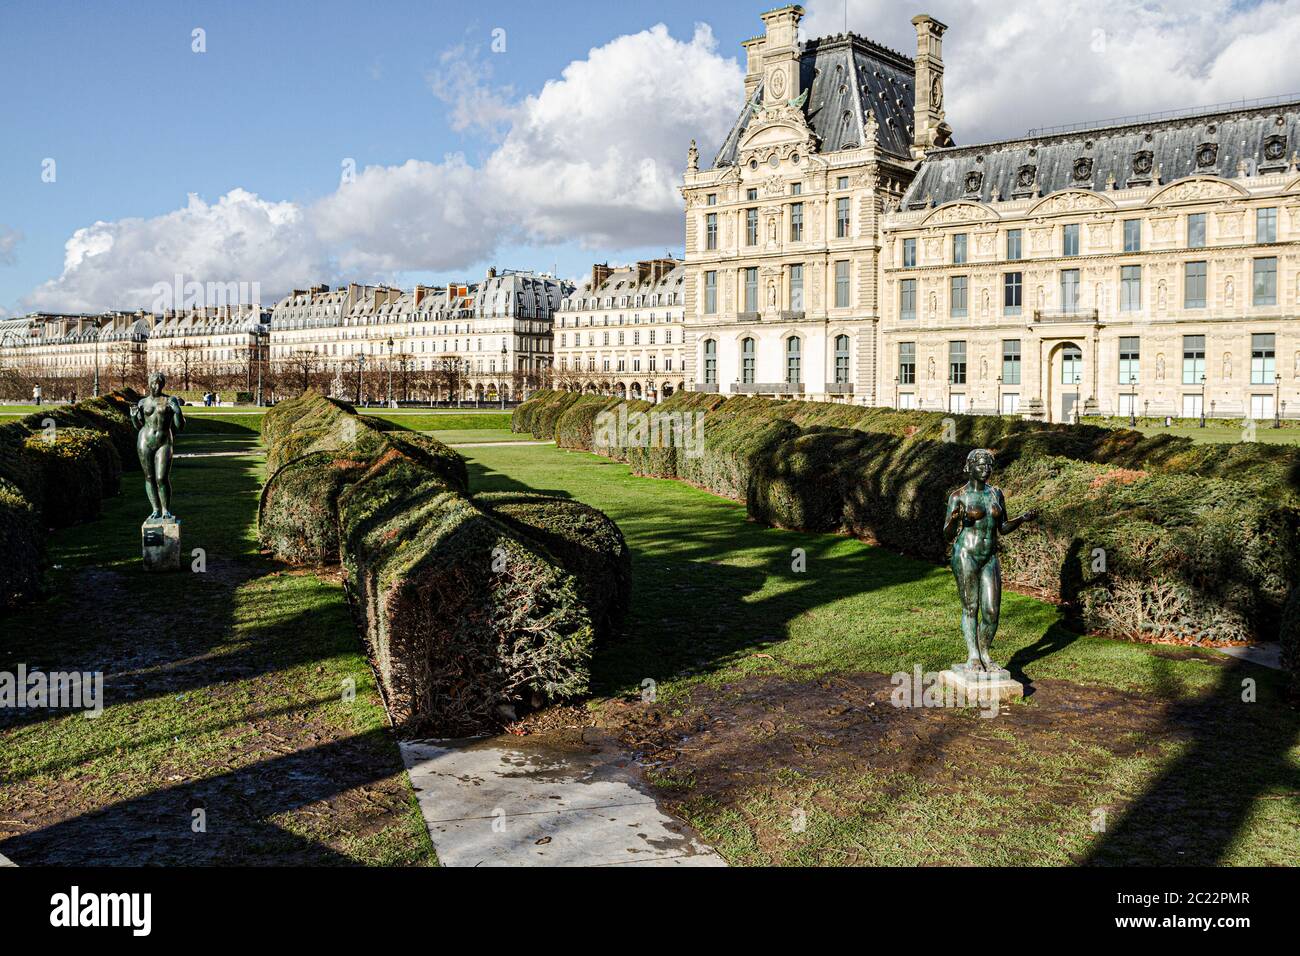 Tuileries Garden (Jardin des Tuileries) and partial view of Louvre Palace (Palais du Louvre). Paris, France. Stock Photo